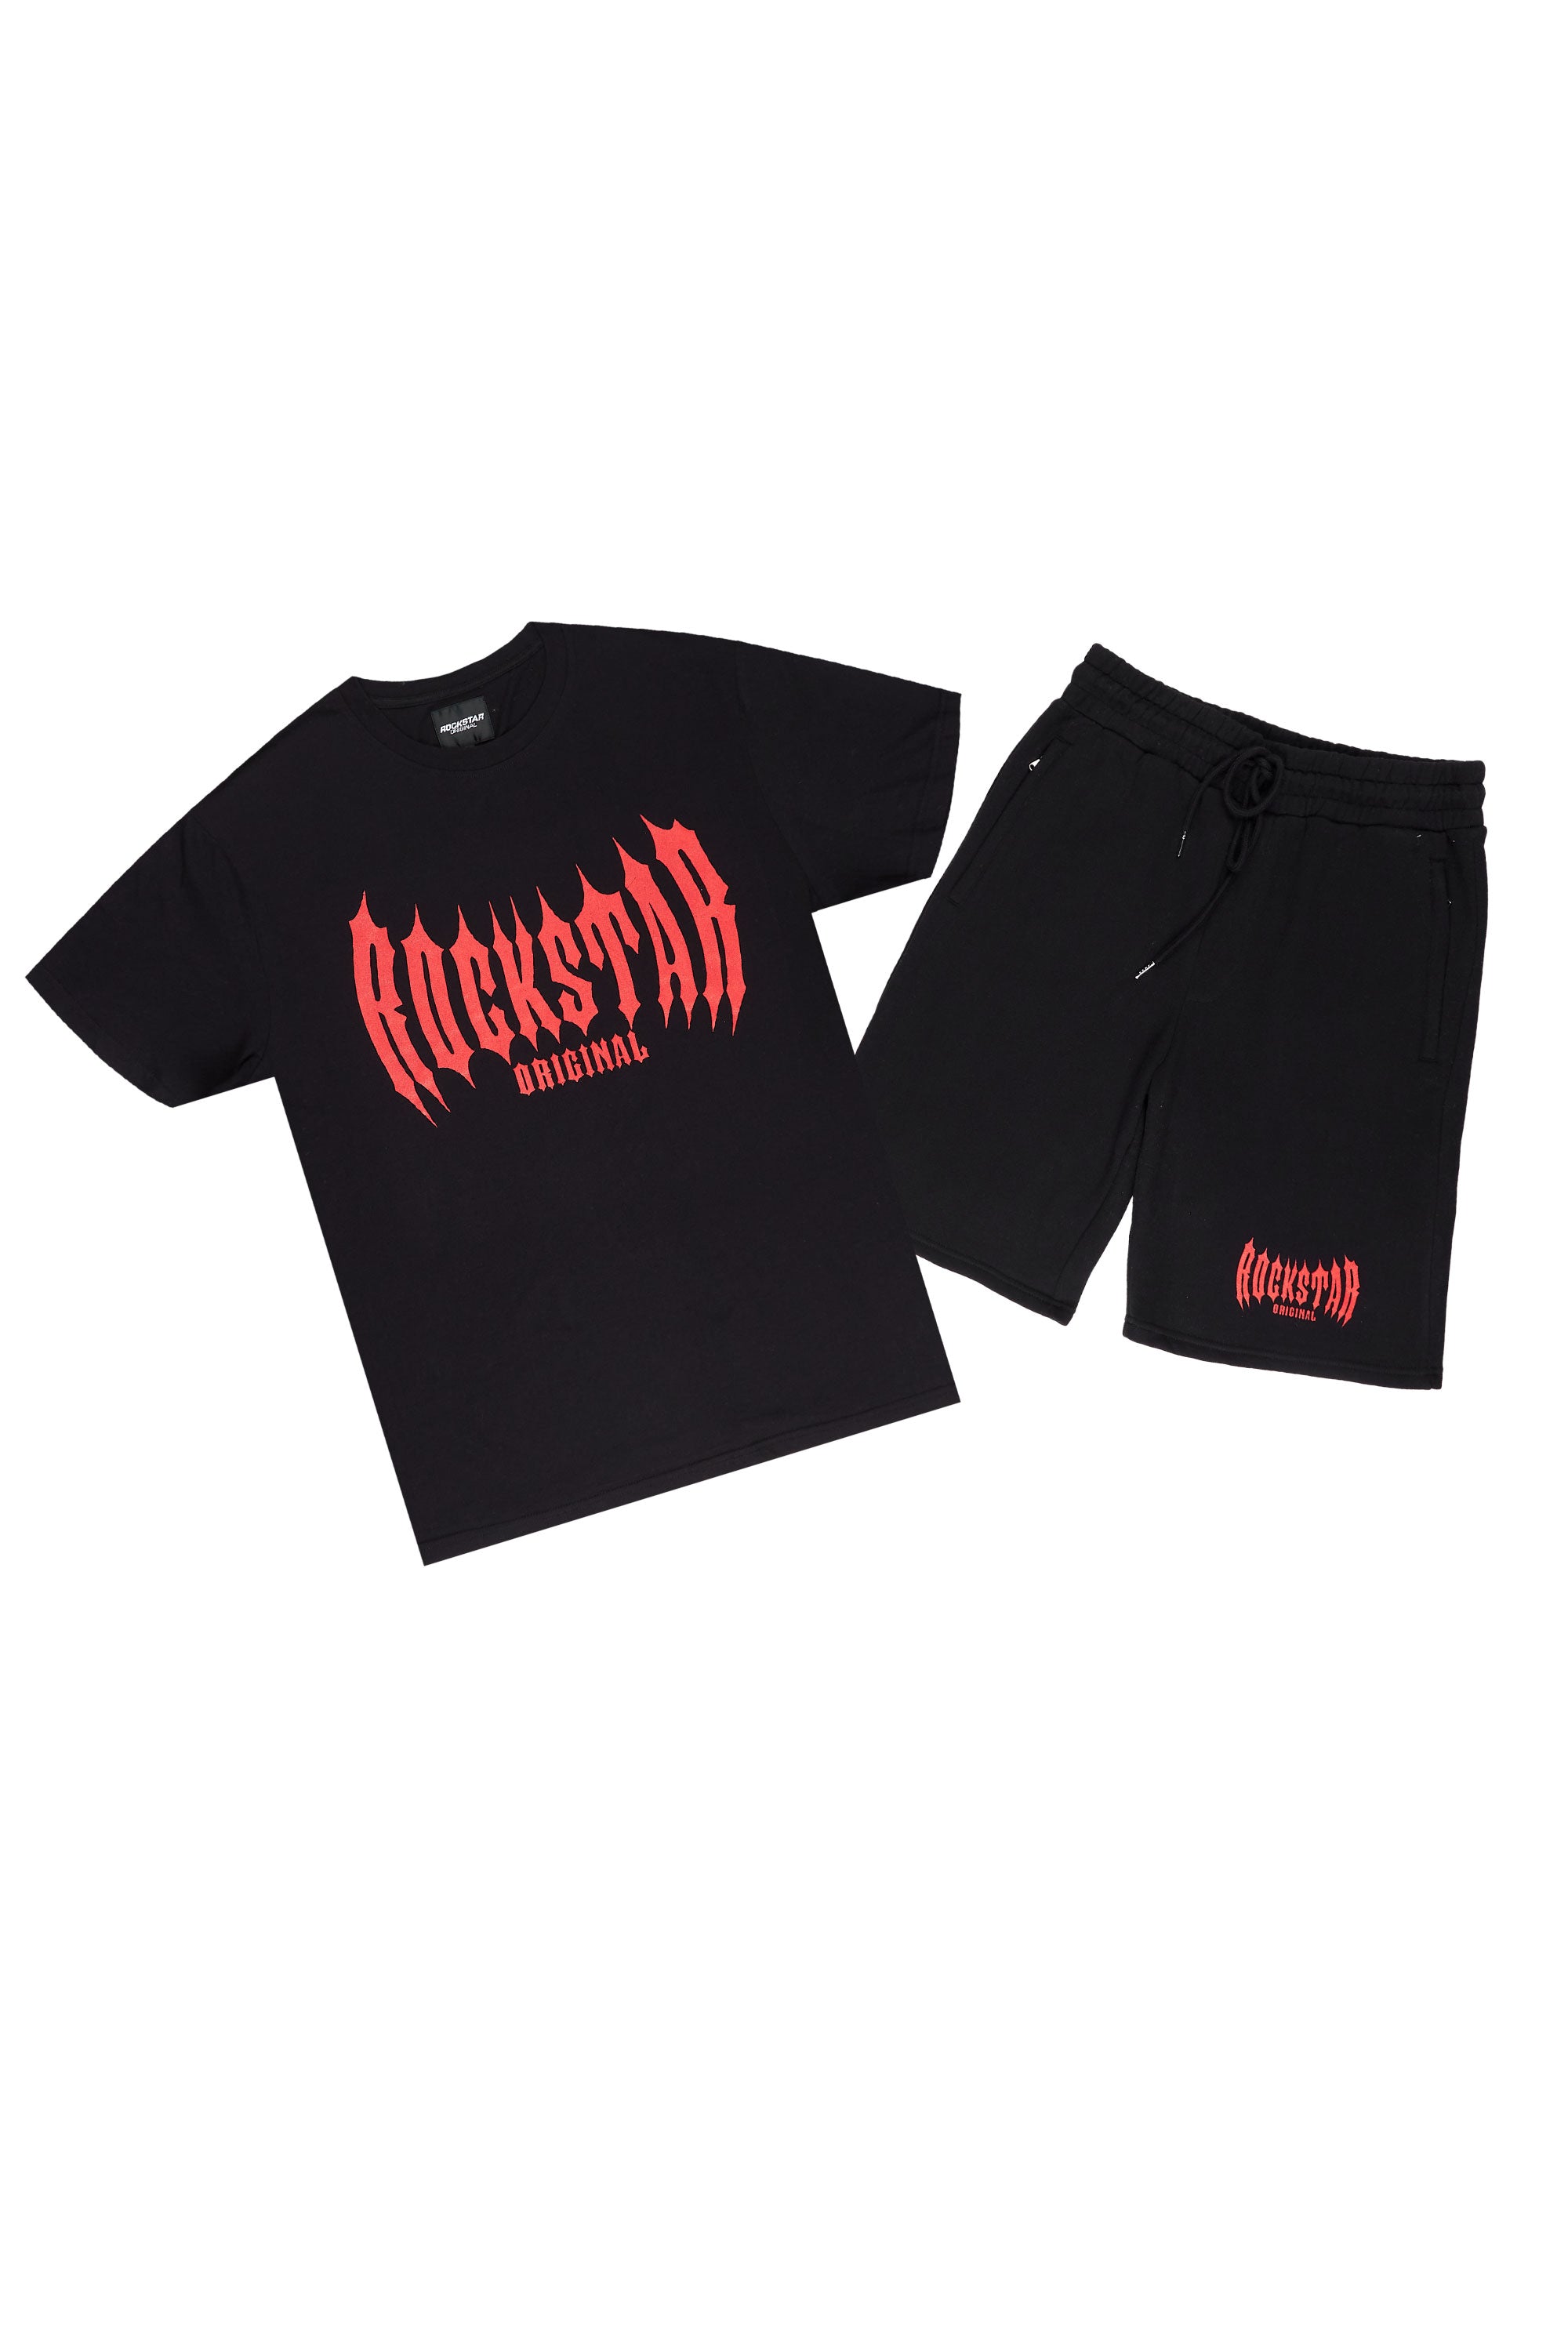 Skeller Black T-Shirt Short Set